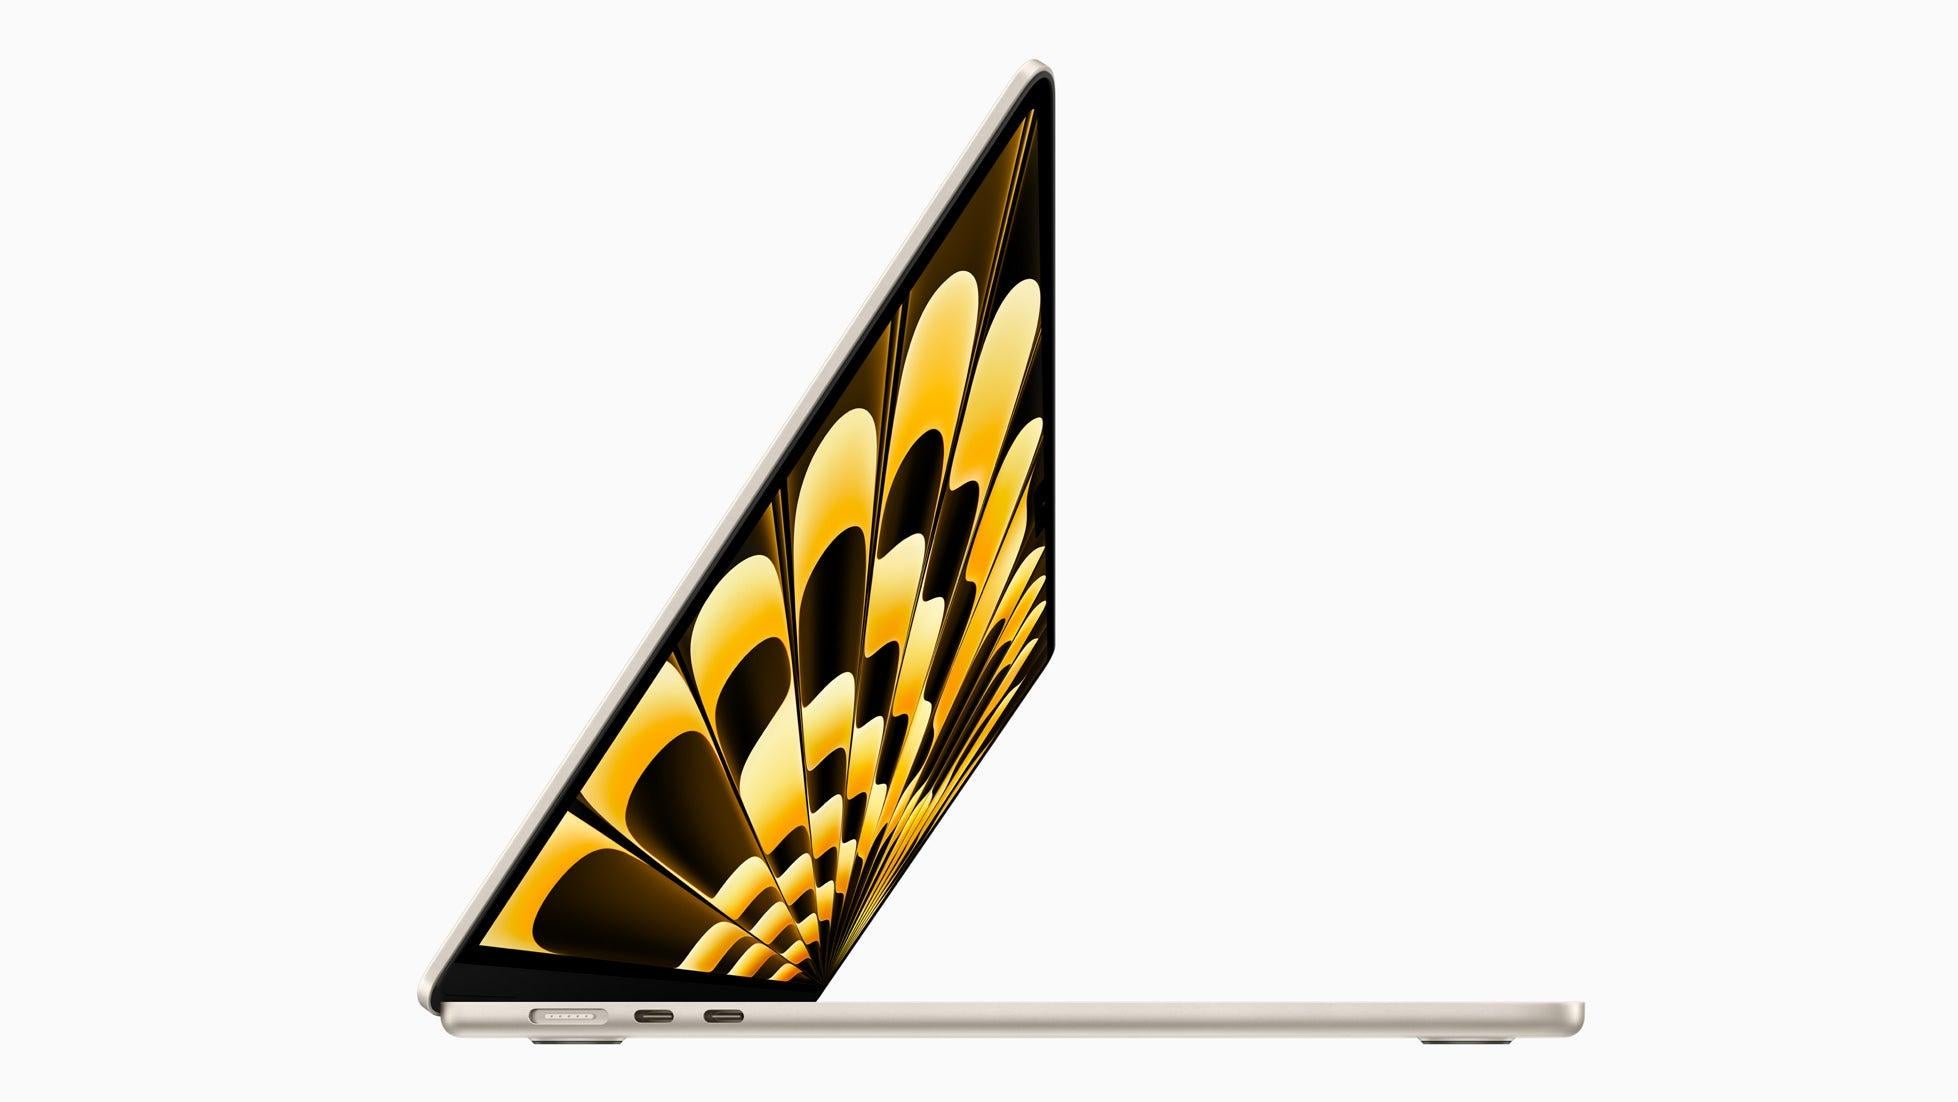 يعد جهاز MacBook Air مقاس 15 بوصة أكبر كمبيوتر محمول من إنتاج شركة Apple في سلسلتها فائقة النحافة.